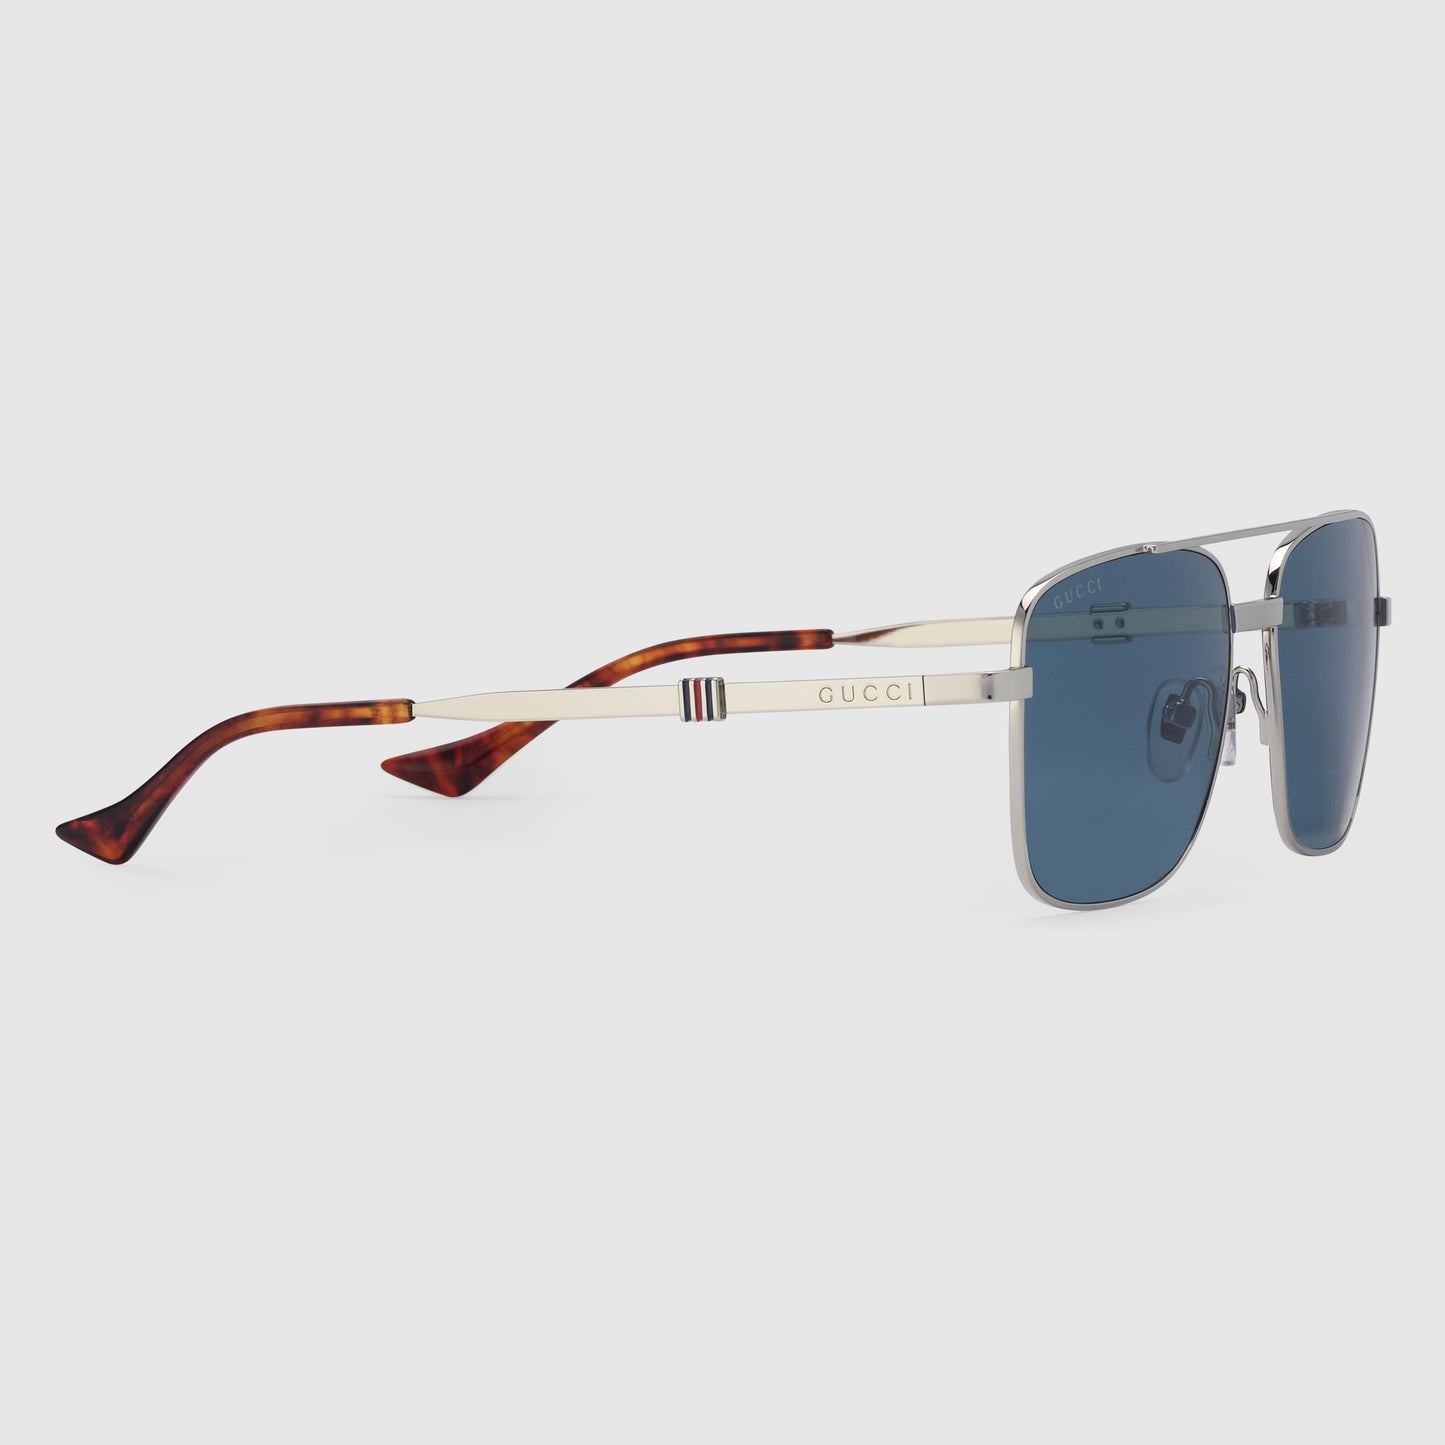 Gucci GG1441S-003 58mm New Sunglasses